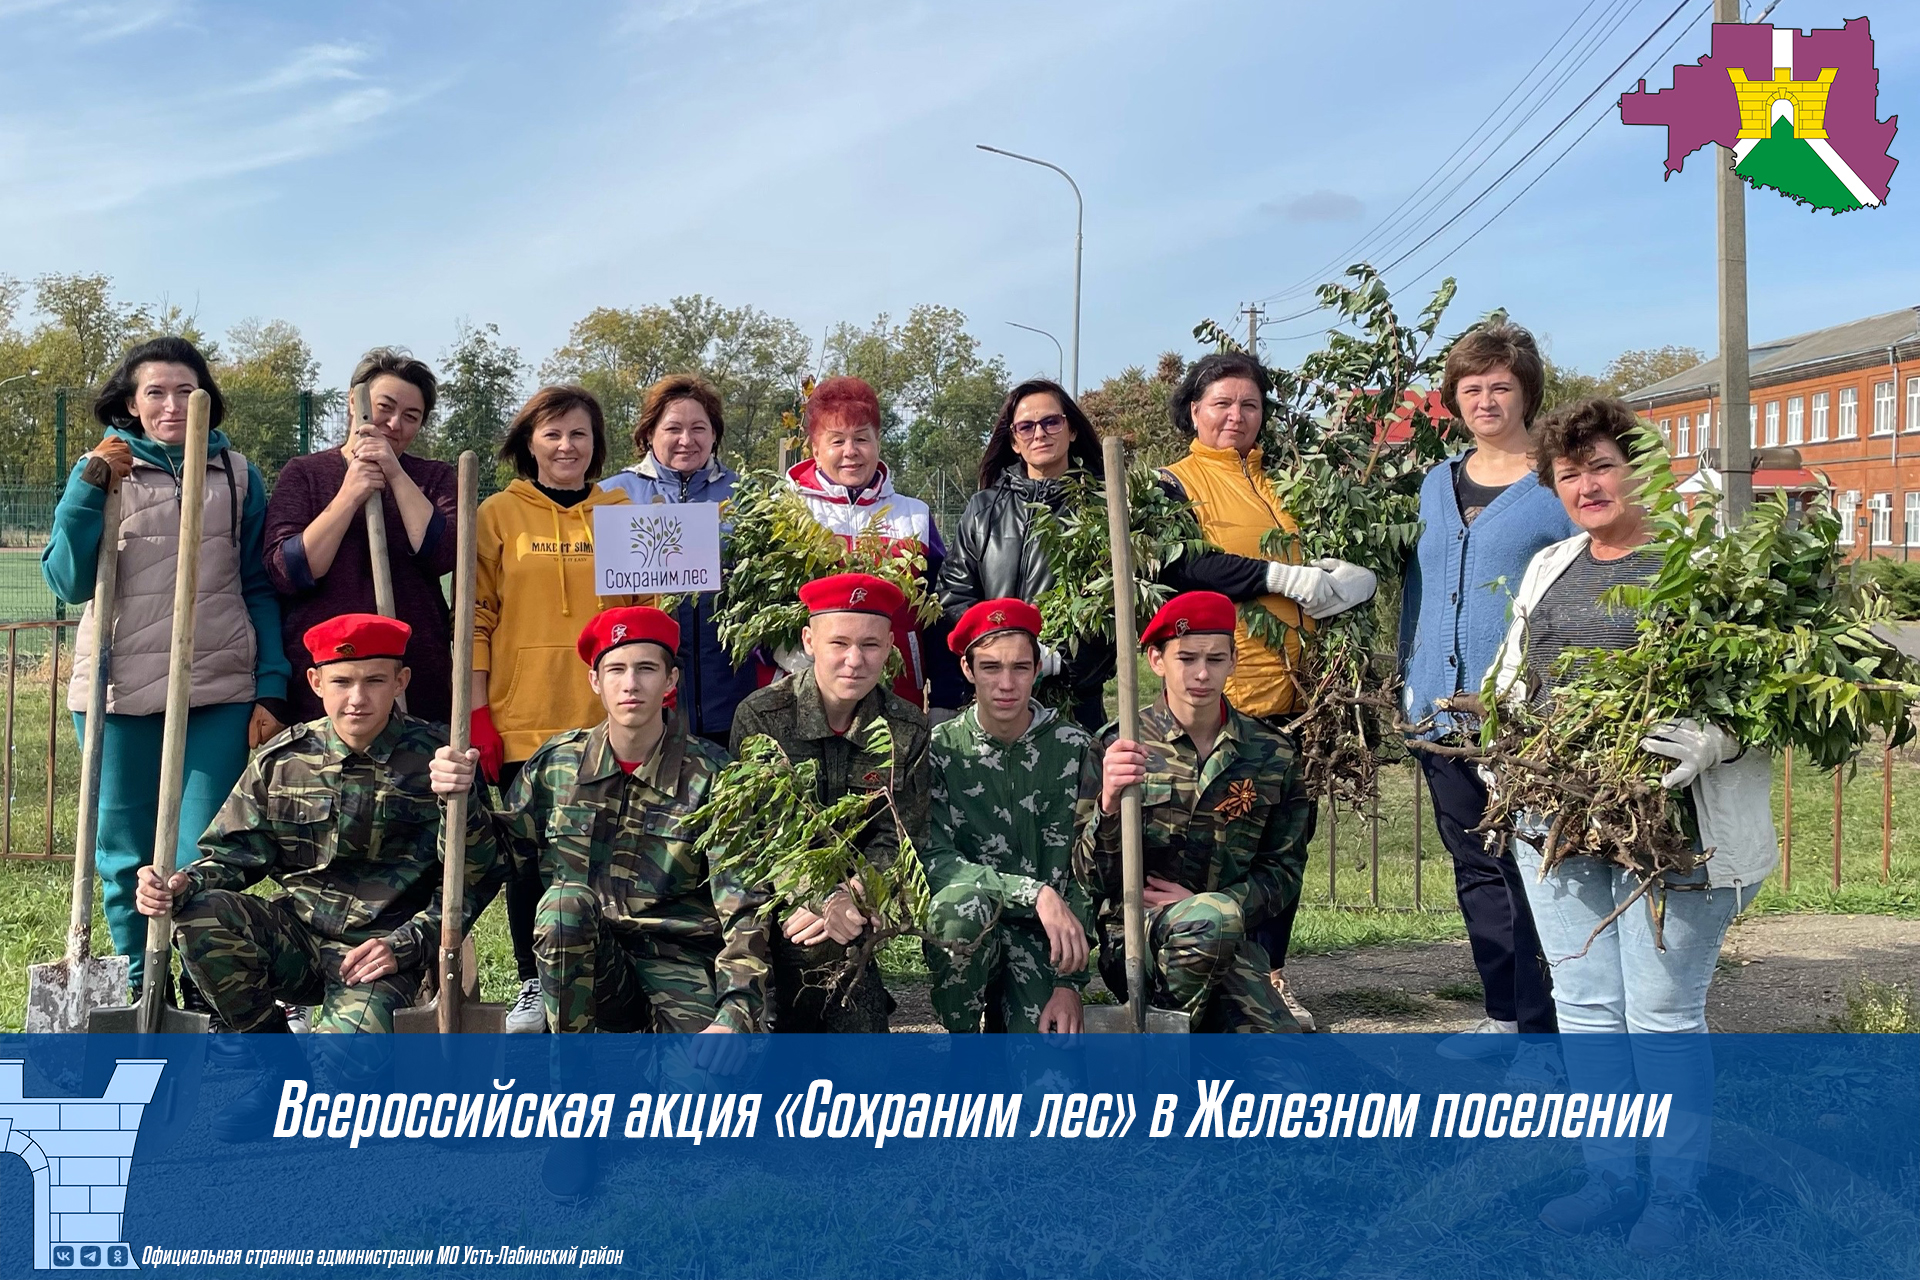 Всероссийская акция «Сохраним лес» в Железном